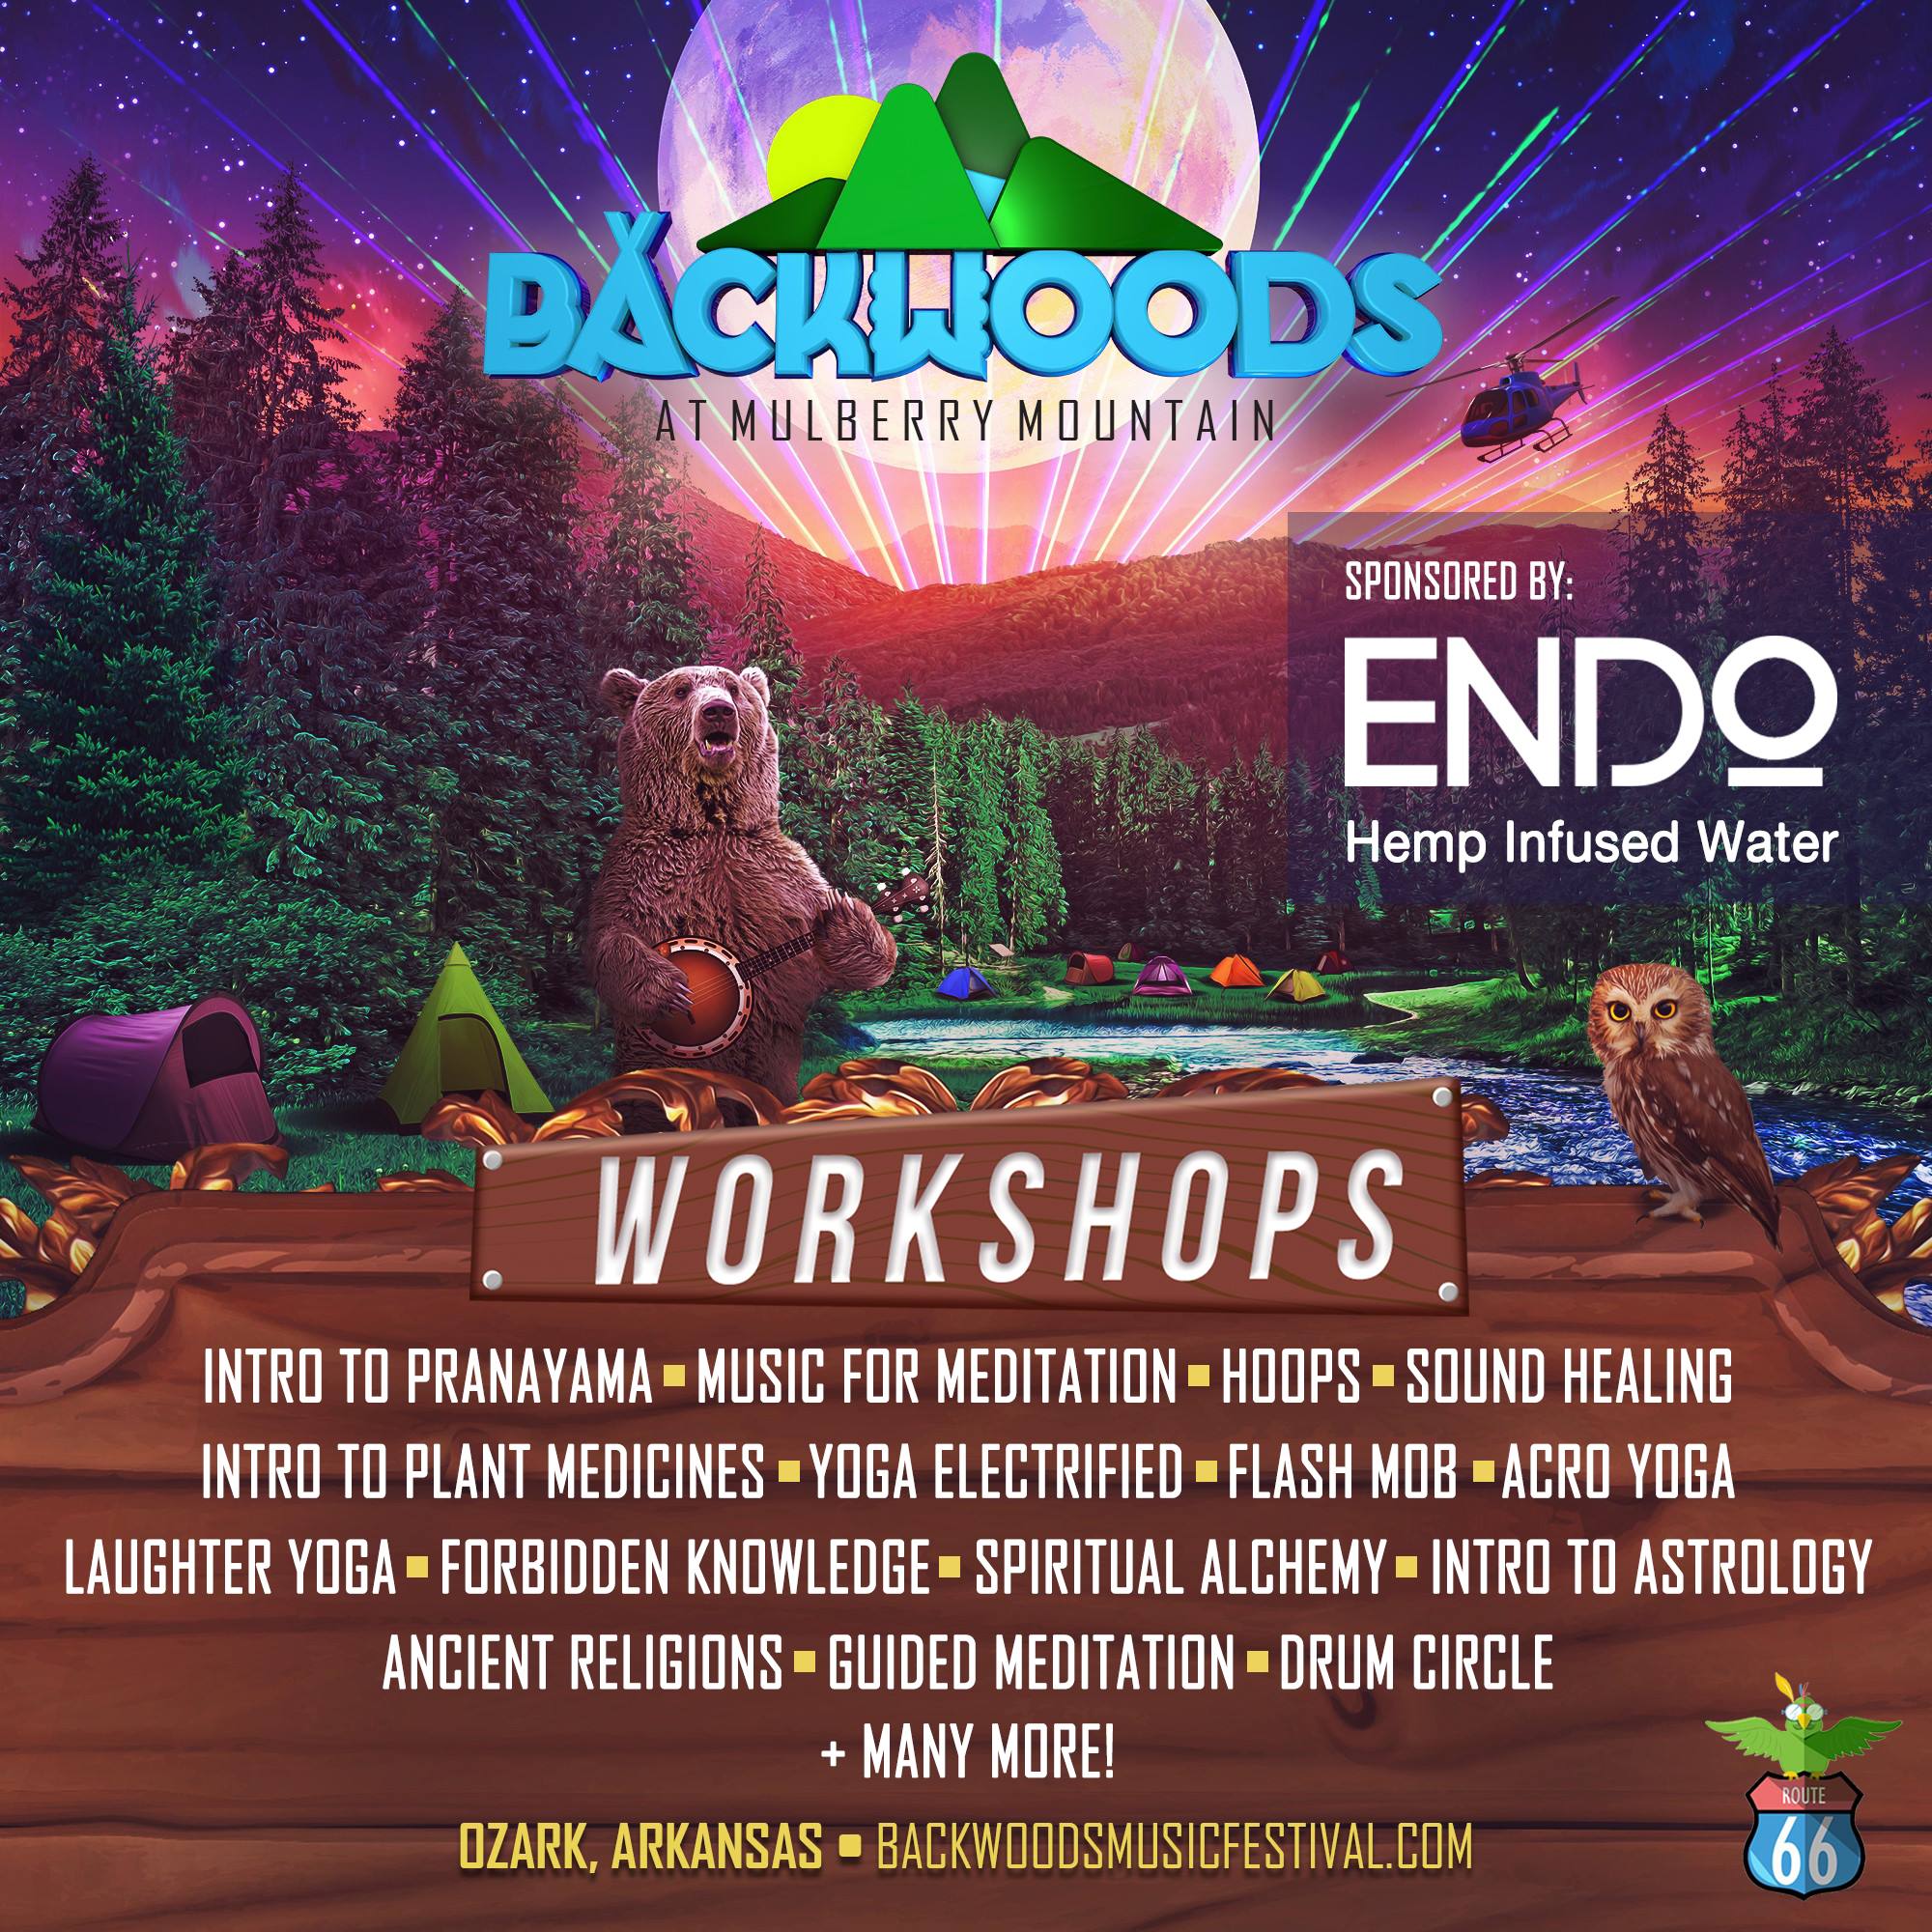 Backwoods 2019 Workshop Lineup